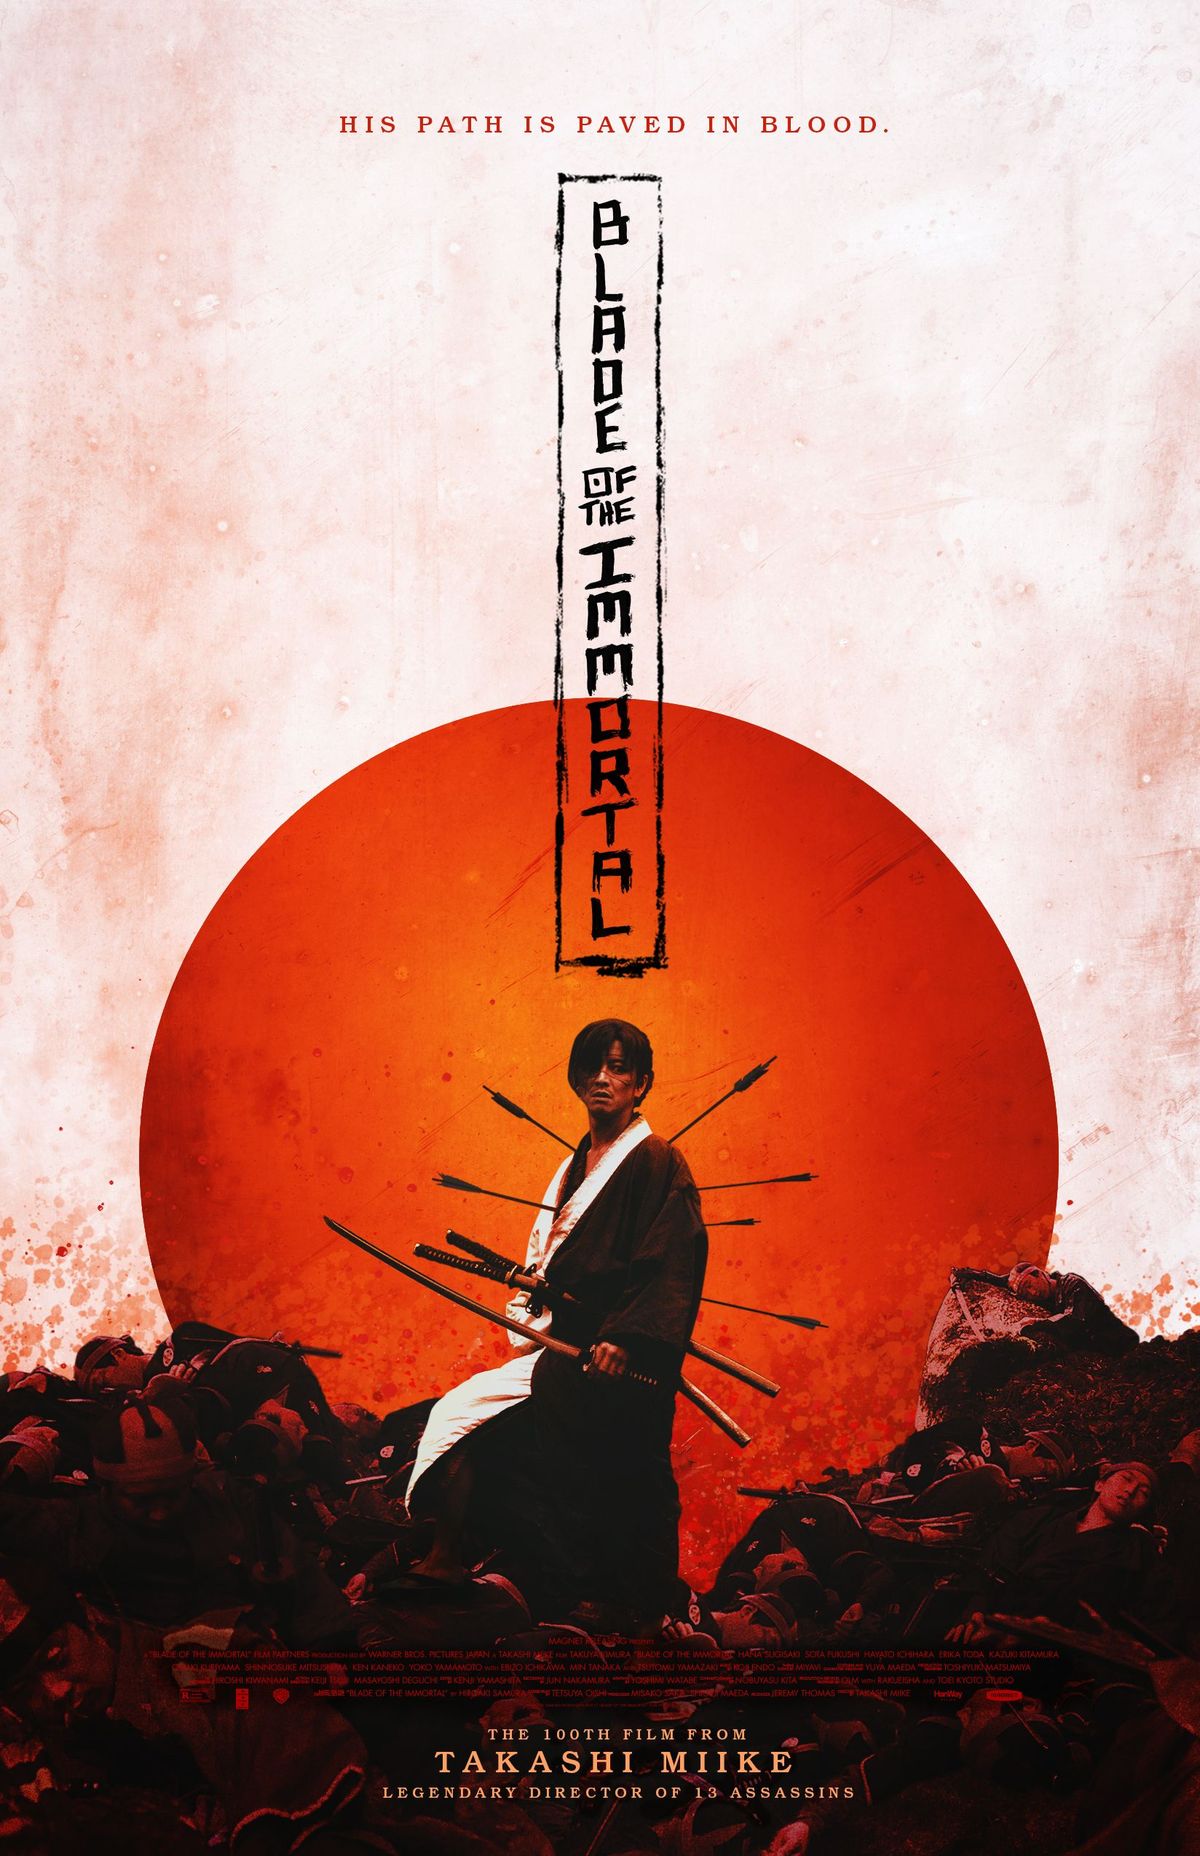 ESCLUSIVO: Poster del film alternativo Blade of the Immortal